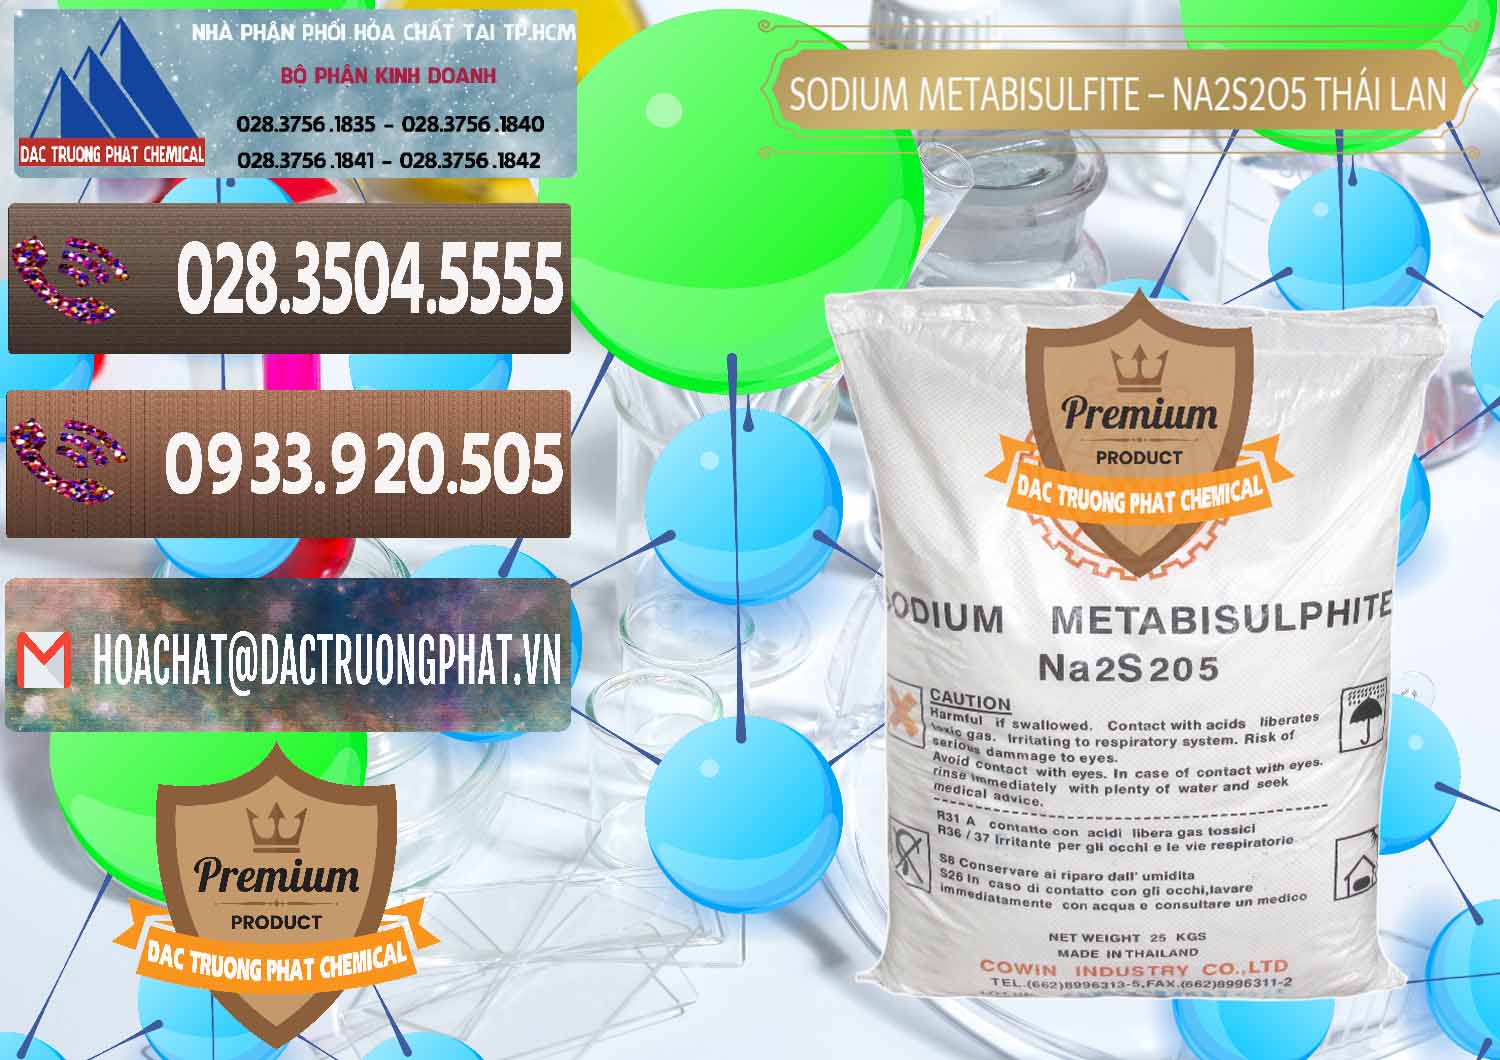 Công ty chuyên cung ứng & bán Sodium Metabisulfite - NA2S2O5 Thái Lan Cowin - 0145 - Kinh doanh và phân phối hóa chất tại TP.HCM - hoachatviet.net